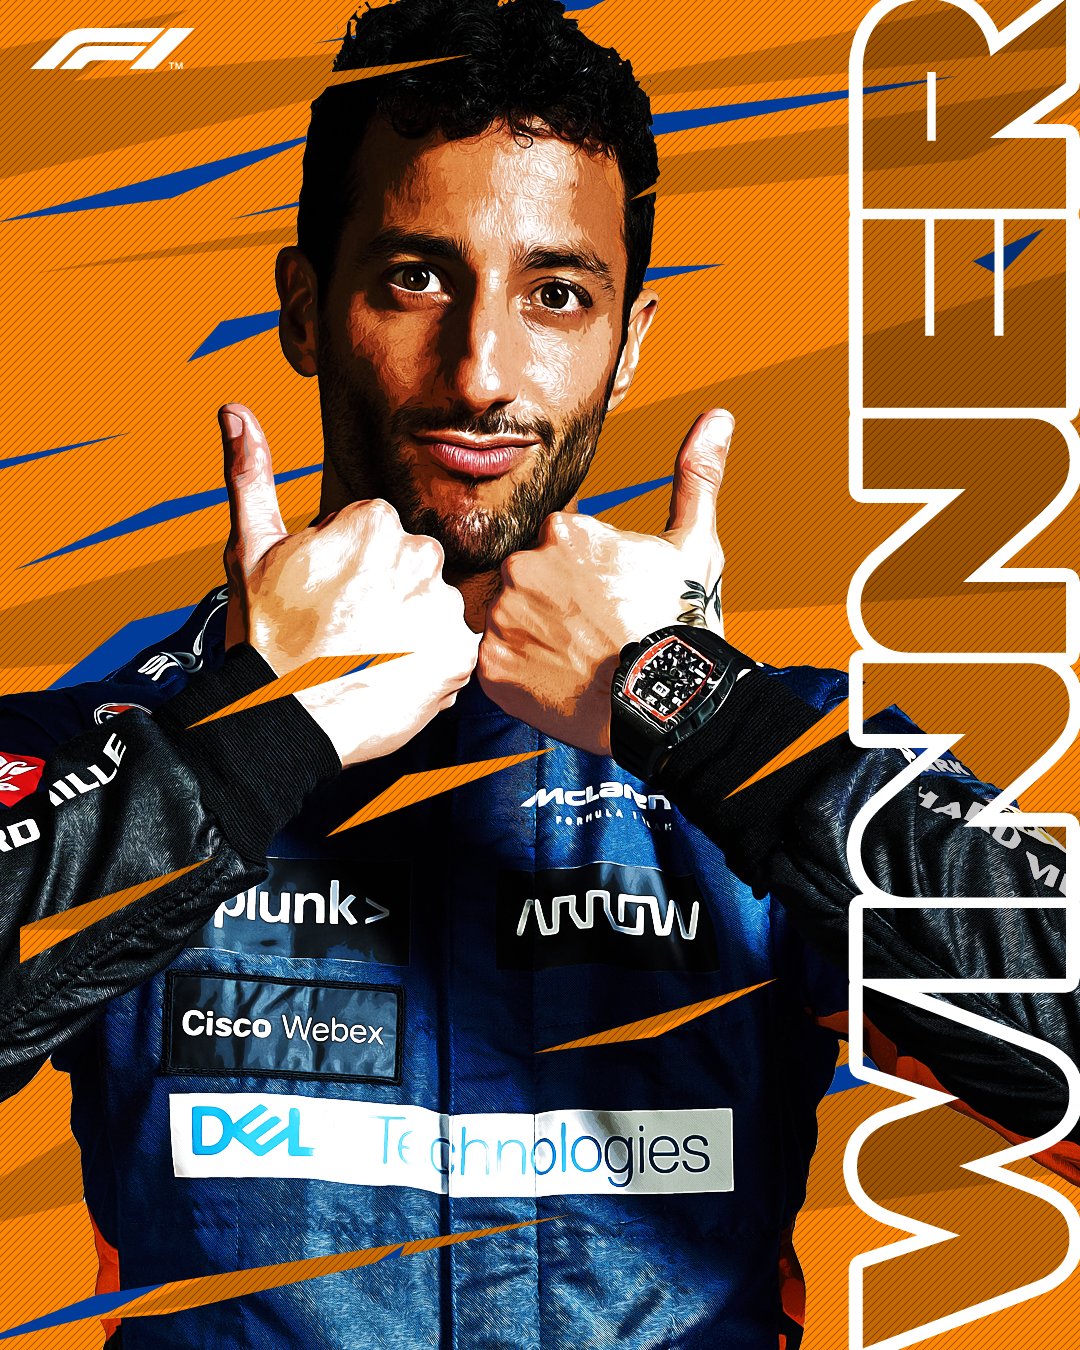 Daniel Ricciardo vence o GP da Itália